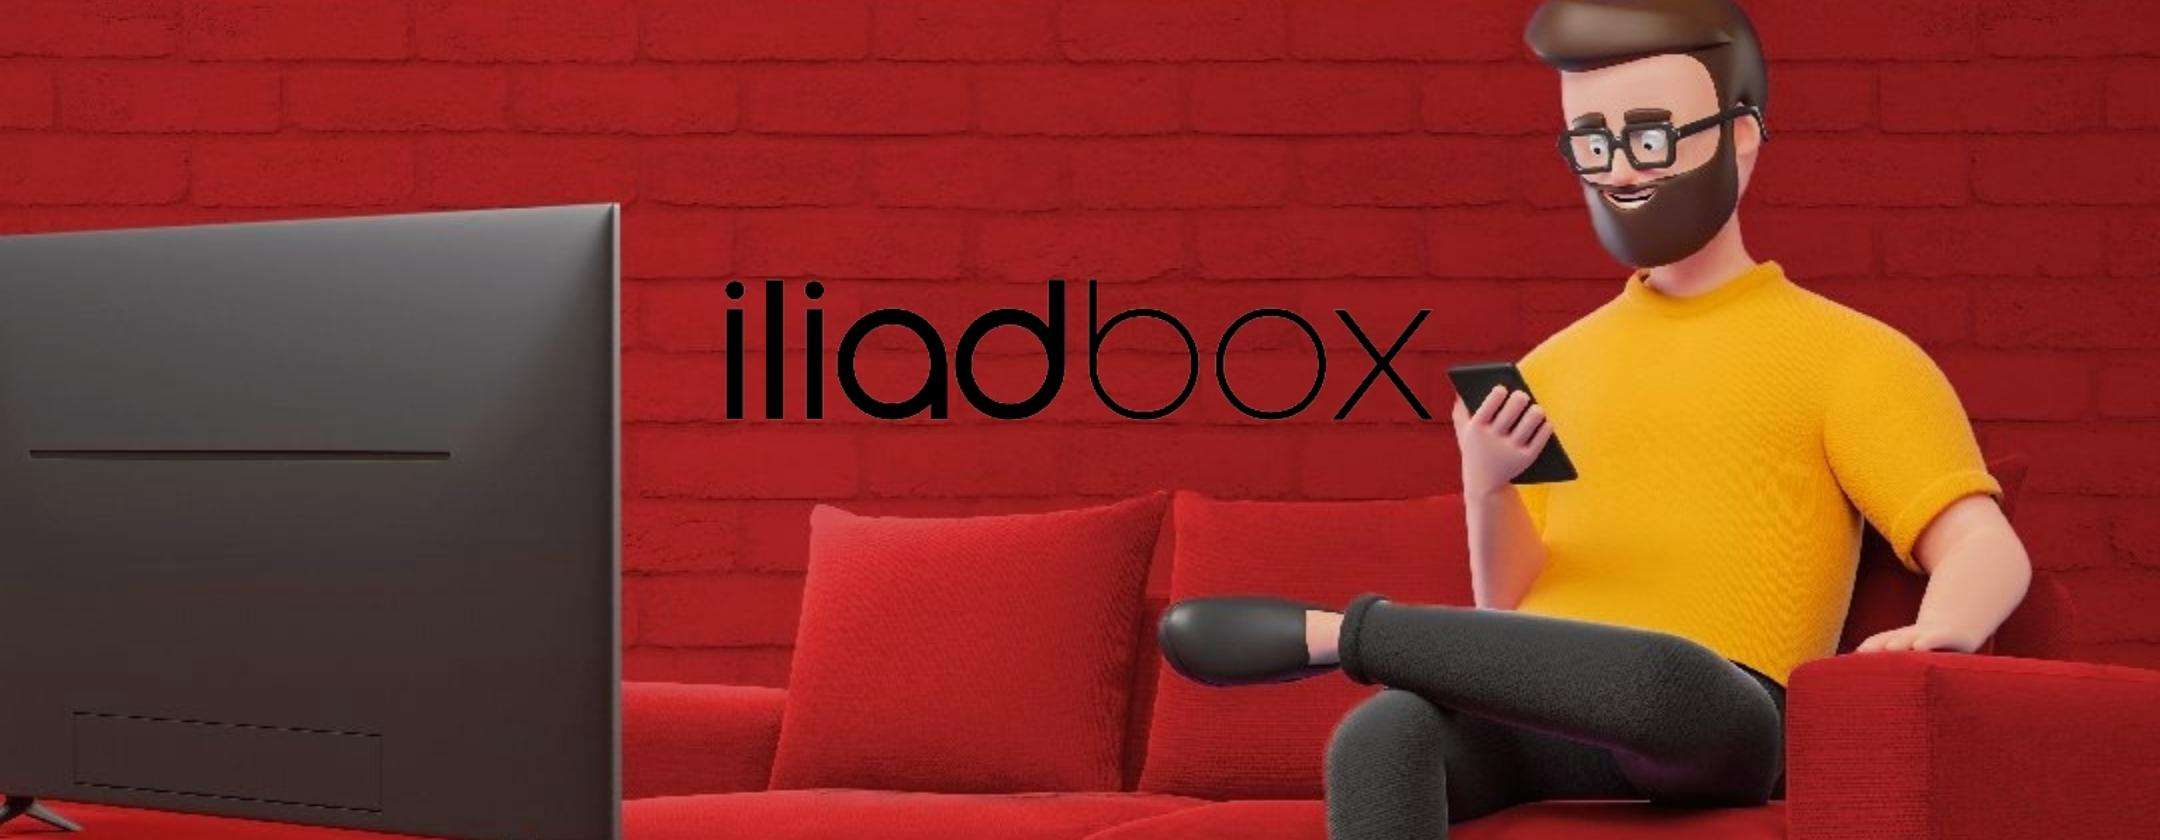 iliadbox: ecco tutti i segreti della nuova Fibra di Iliad